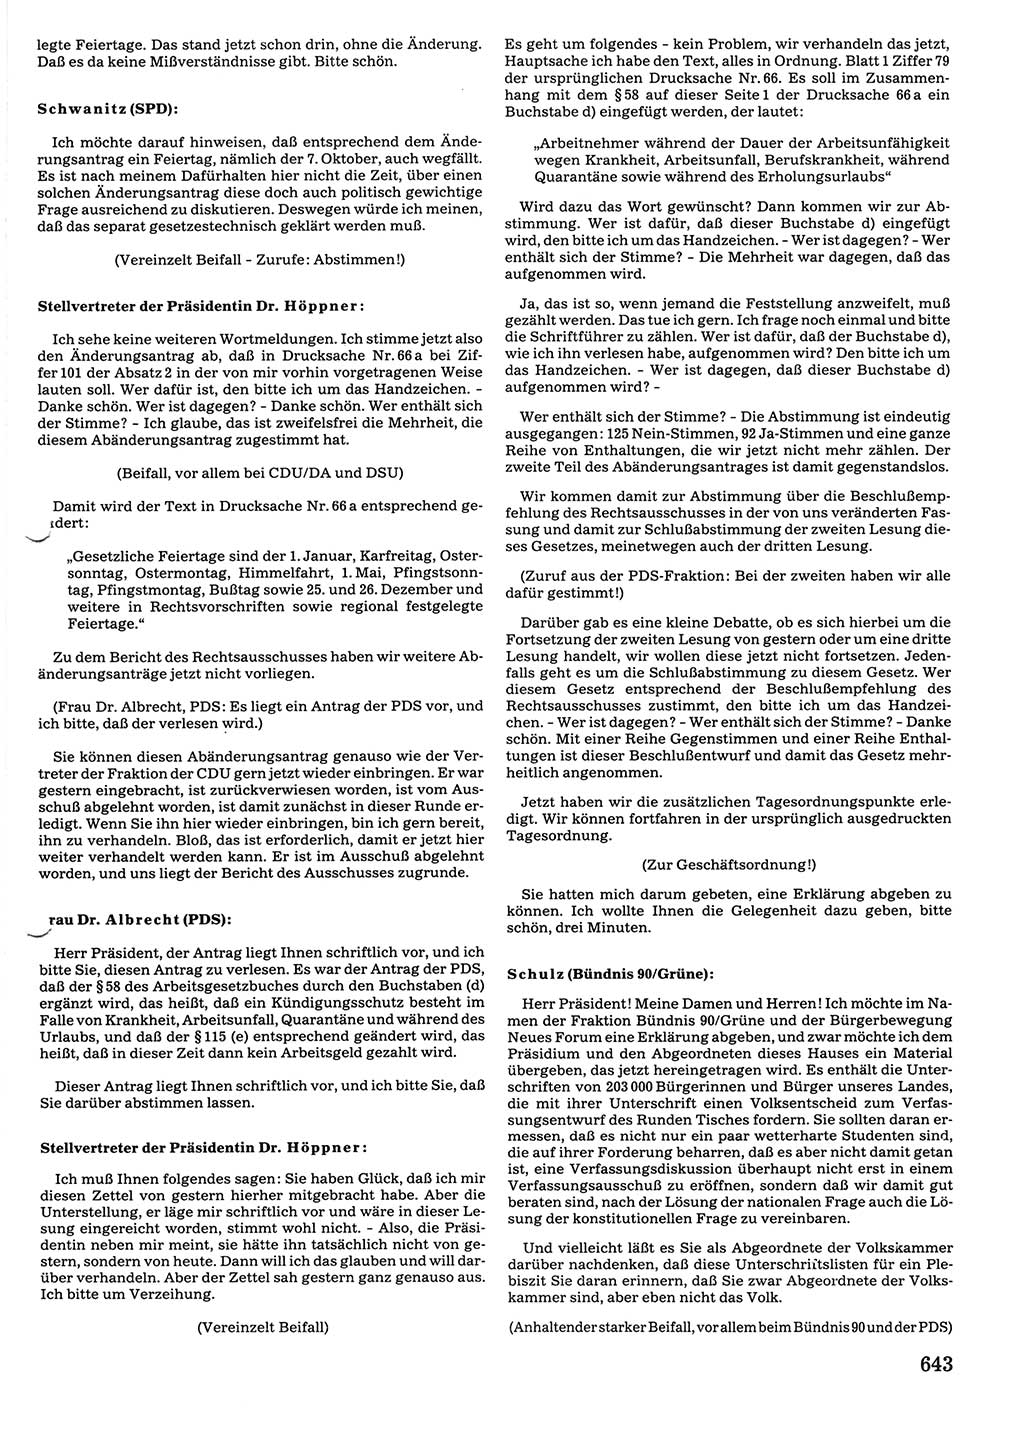 Tagungen der Volkskammer (VK) der Deutschen Demokratischen Republik (DDR), 10. Wahlperiode 1990, Seite 643 (VK. DDR 10. WP. 1990, Prot. Tg. 1-38, 5.4.-2.10.1990, S. 643)